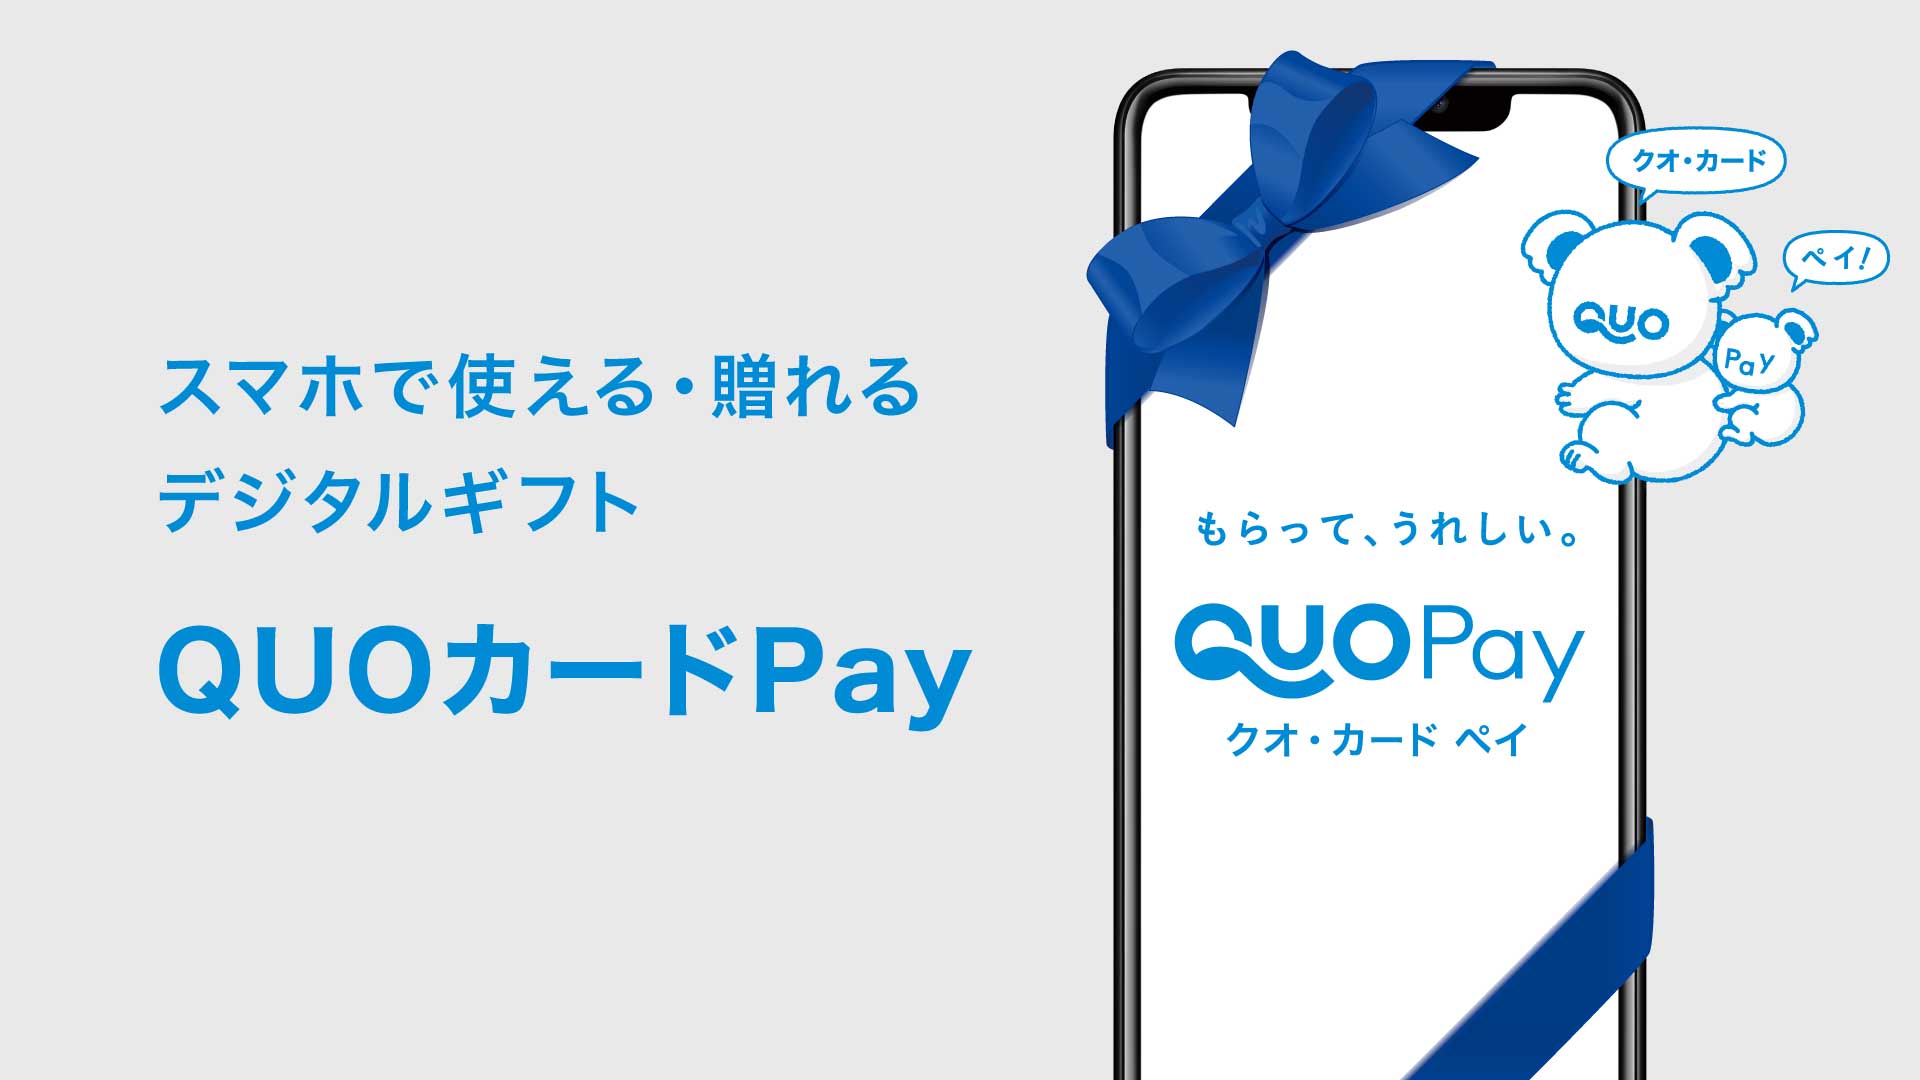 デジタルギフトの新しい形 QUOカードPay